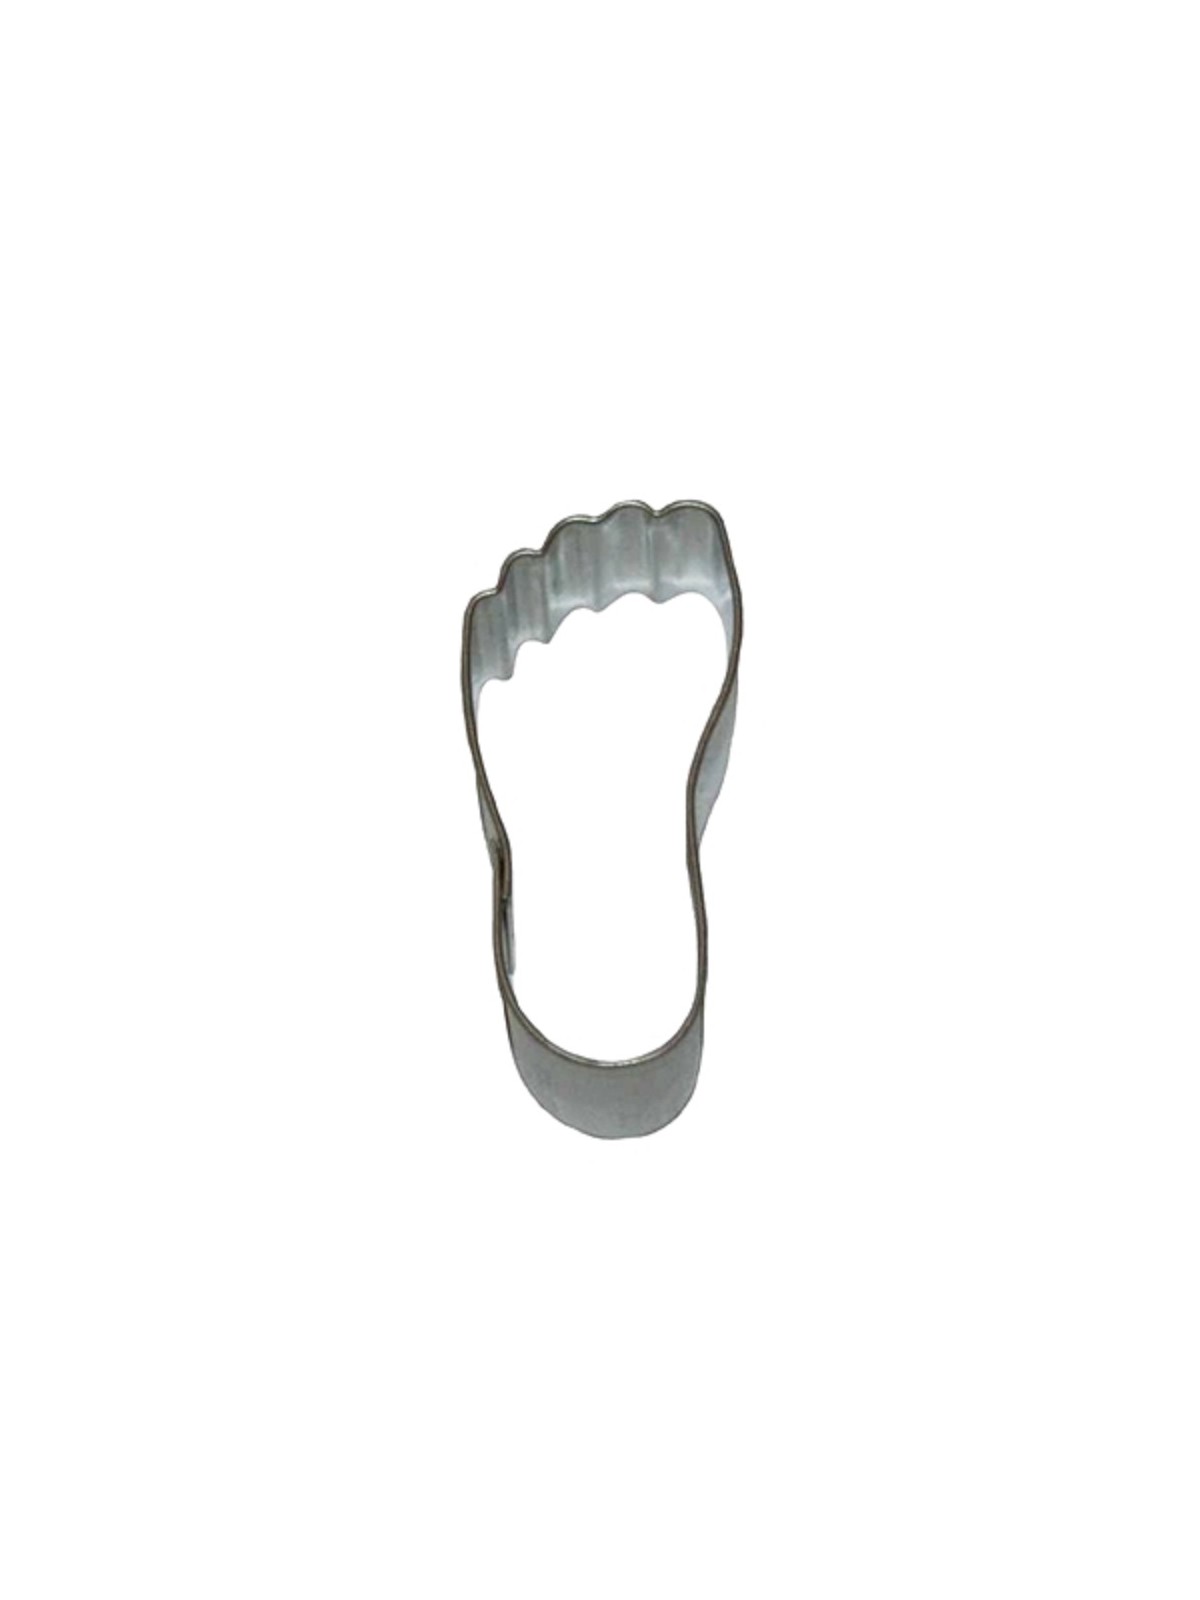 Cookie cutter - leg - footprint